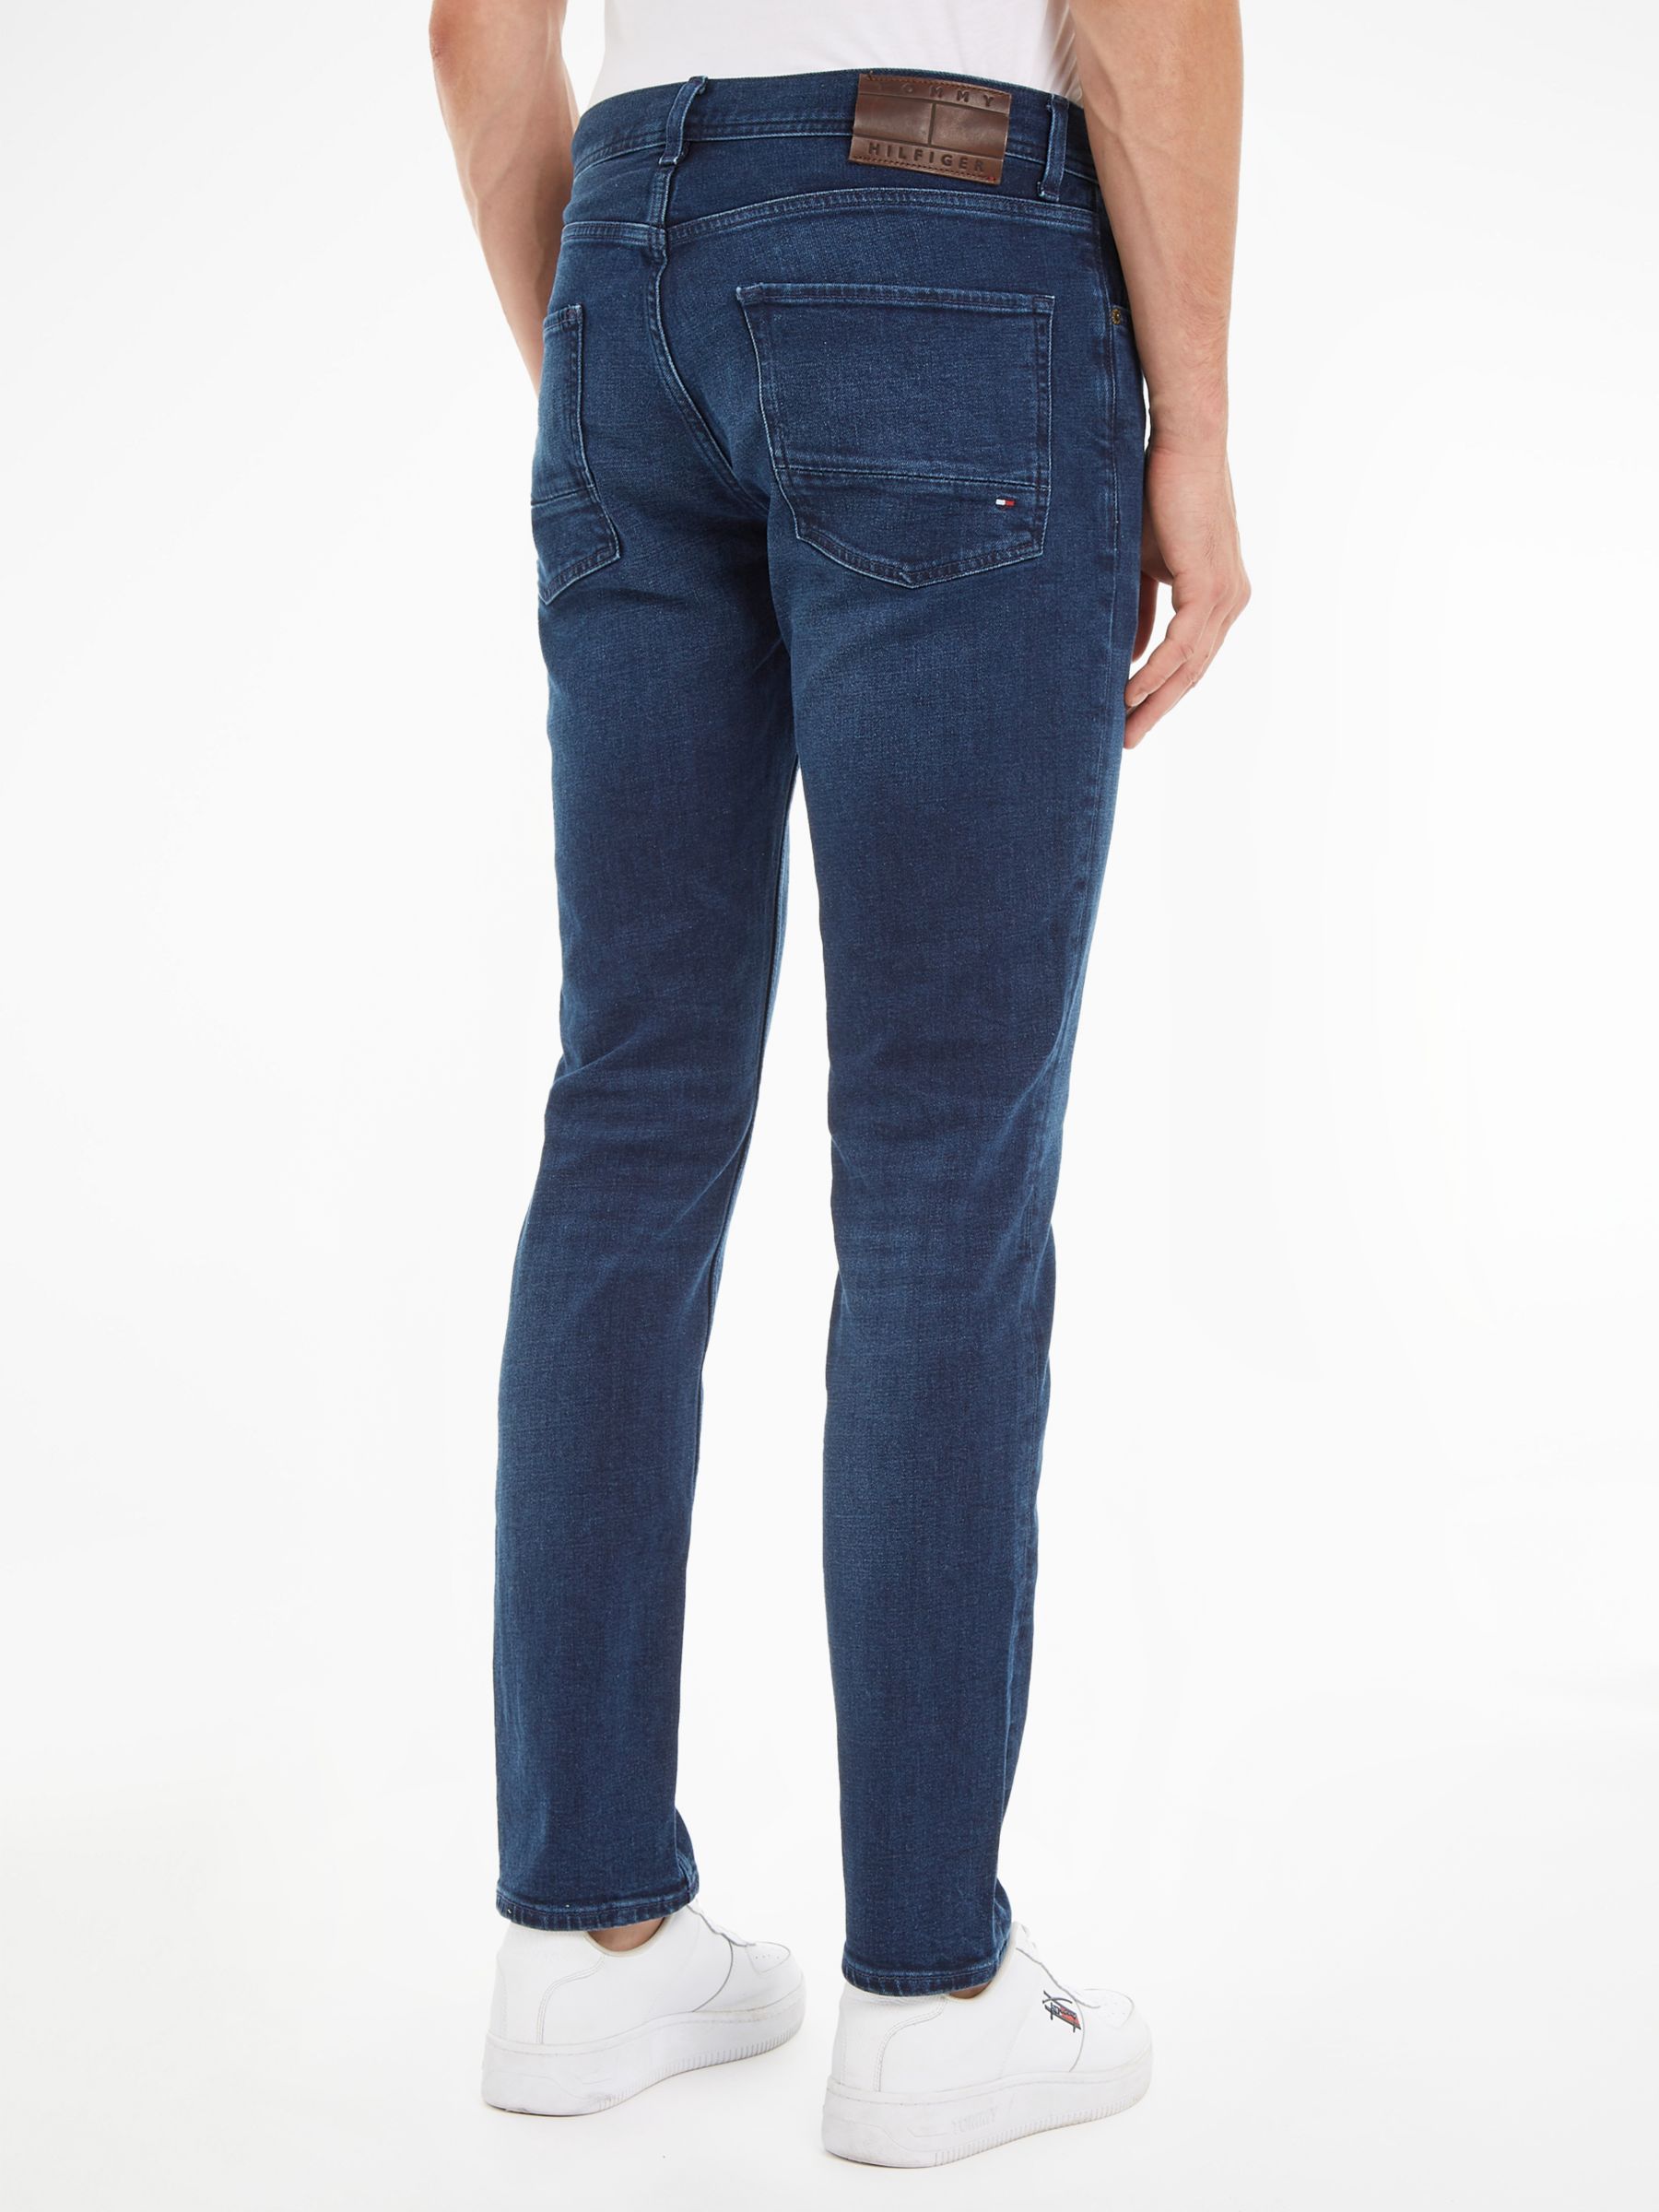 Tommy Hilfiger Denton Straight Jeans, Bridger Indigo, 30S